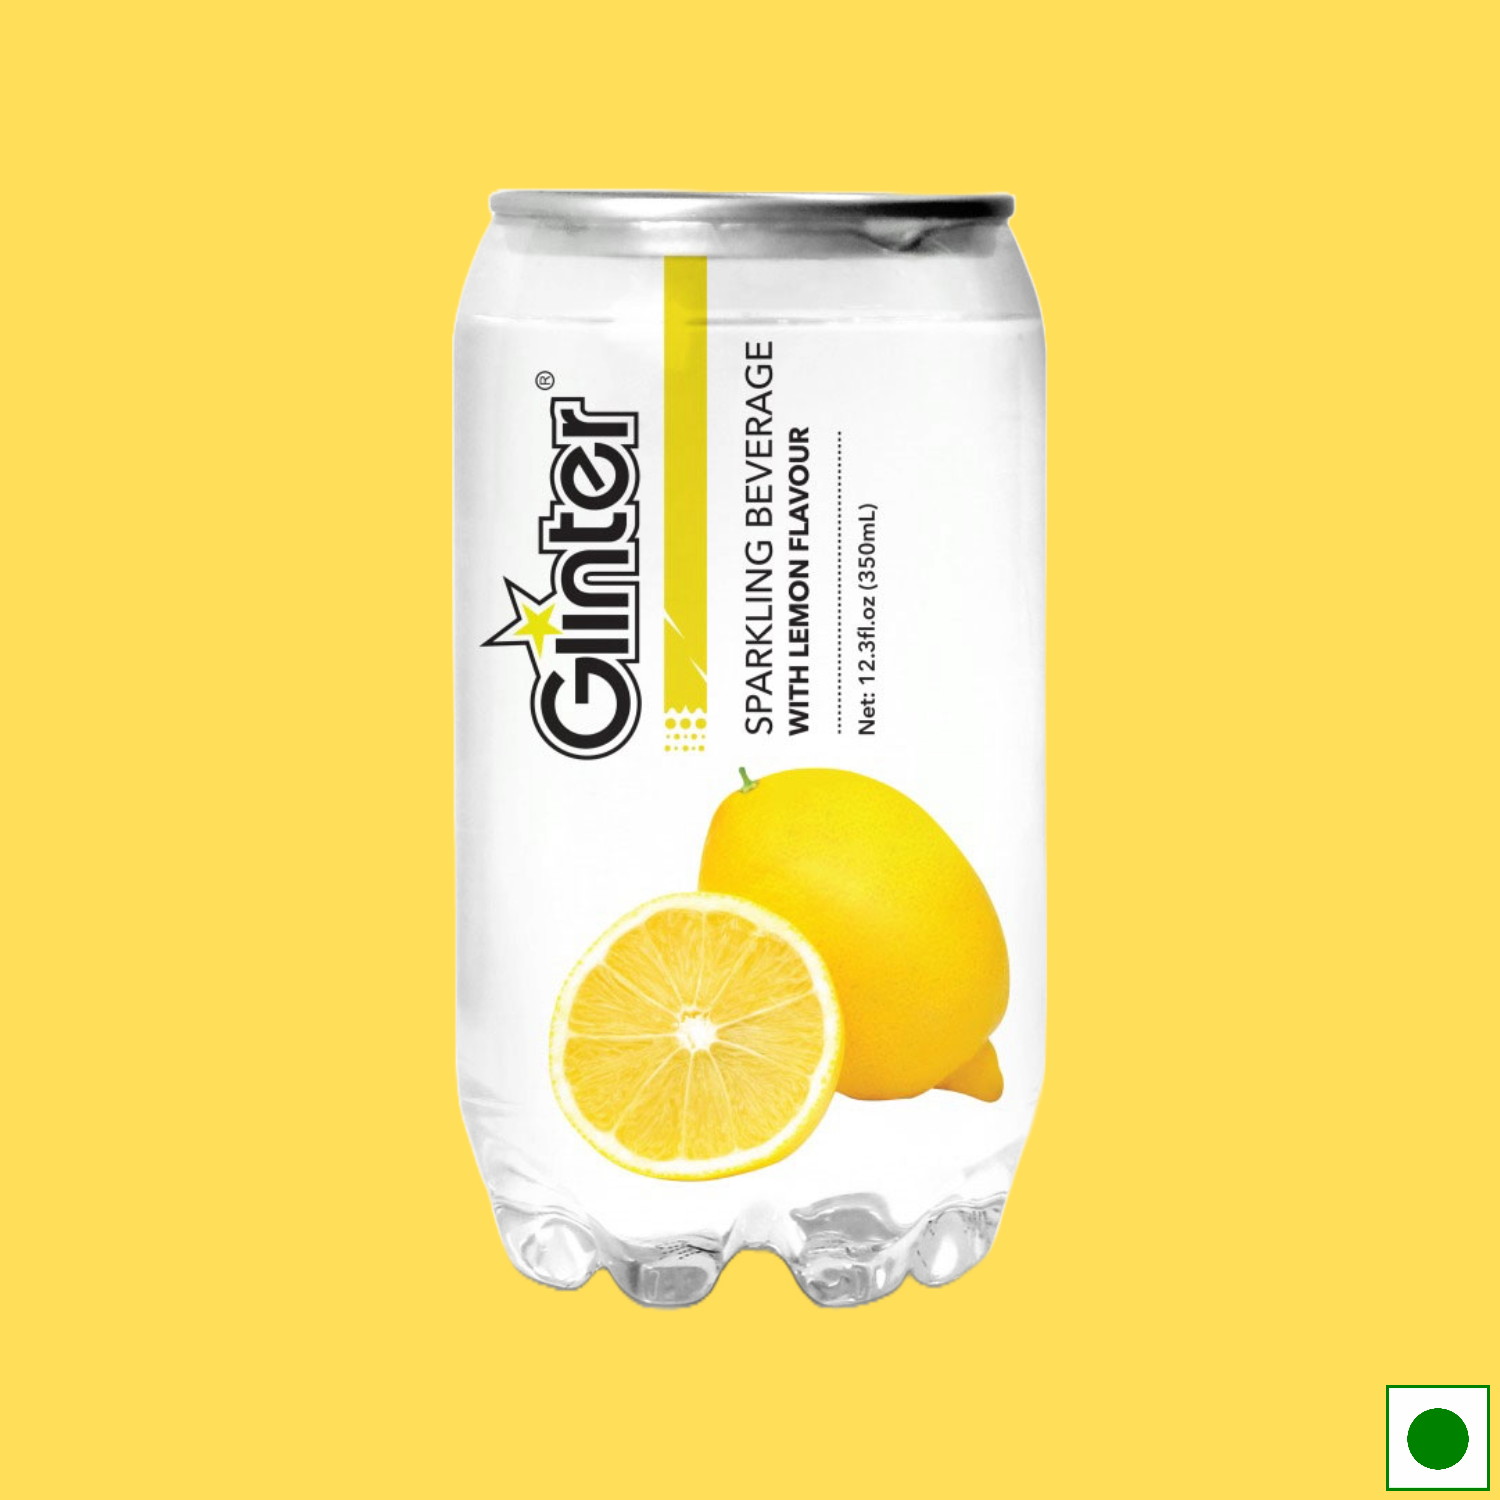 Glinter Sparkling Beverage Lemon, 350ml (Imported)